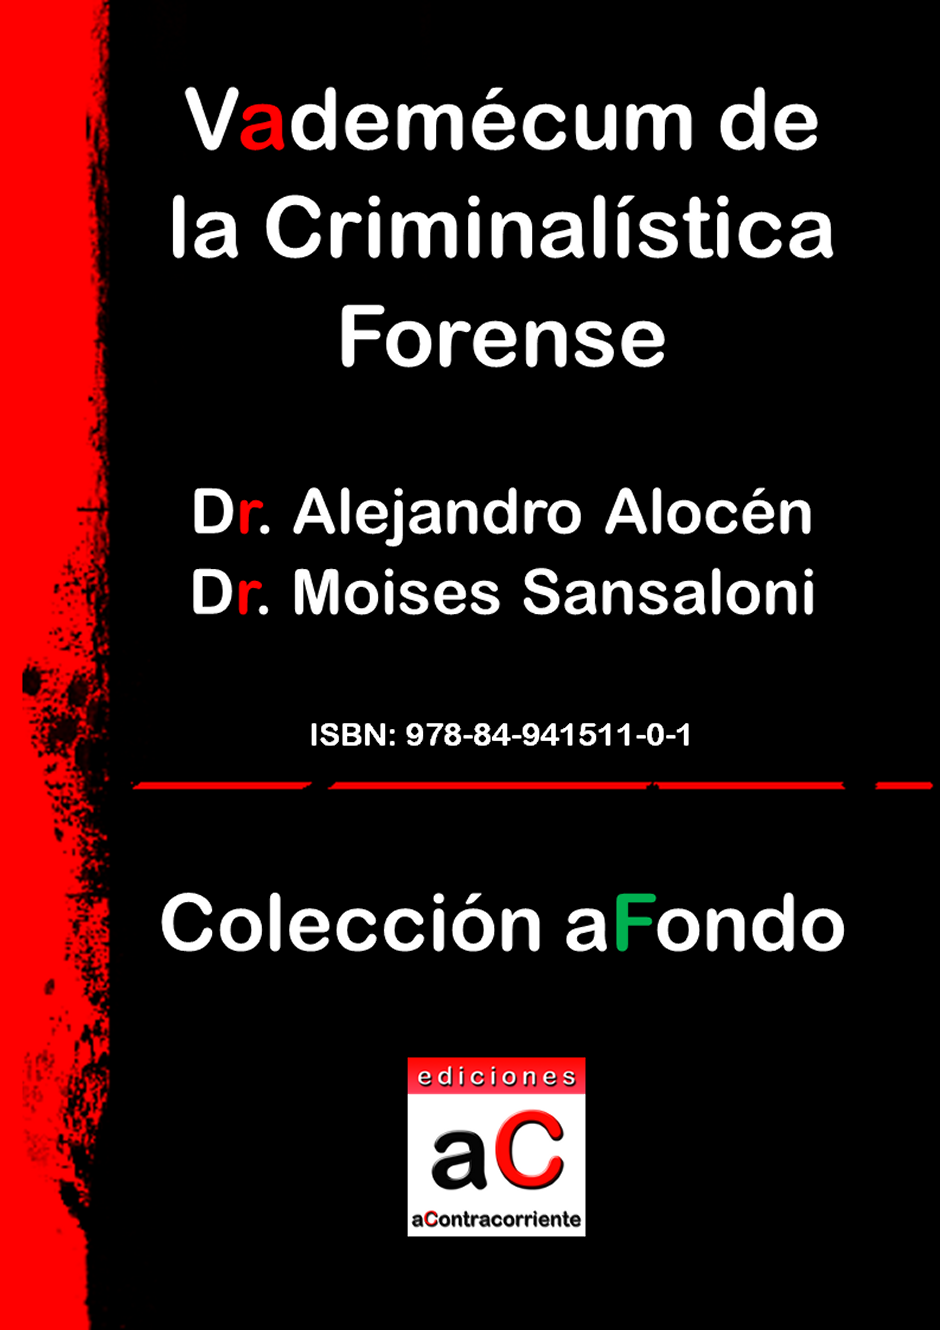 Vademécum de la criminalística forense, Ediciones aContracorriente